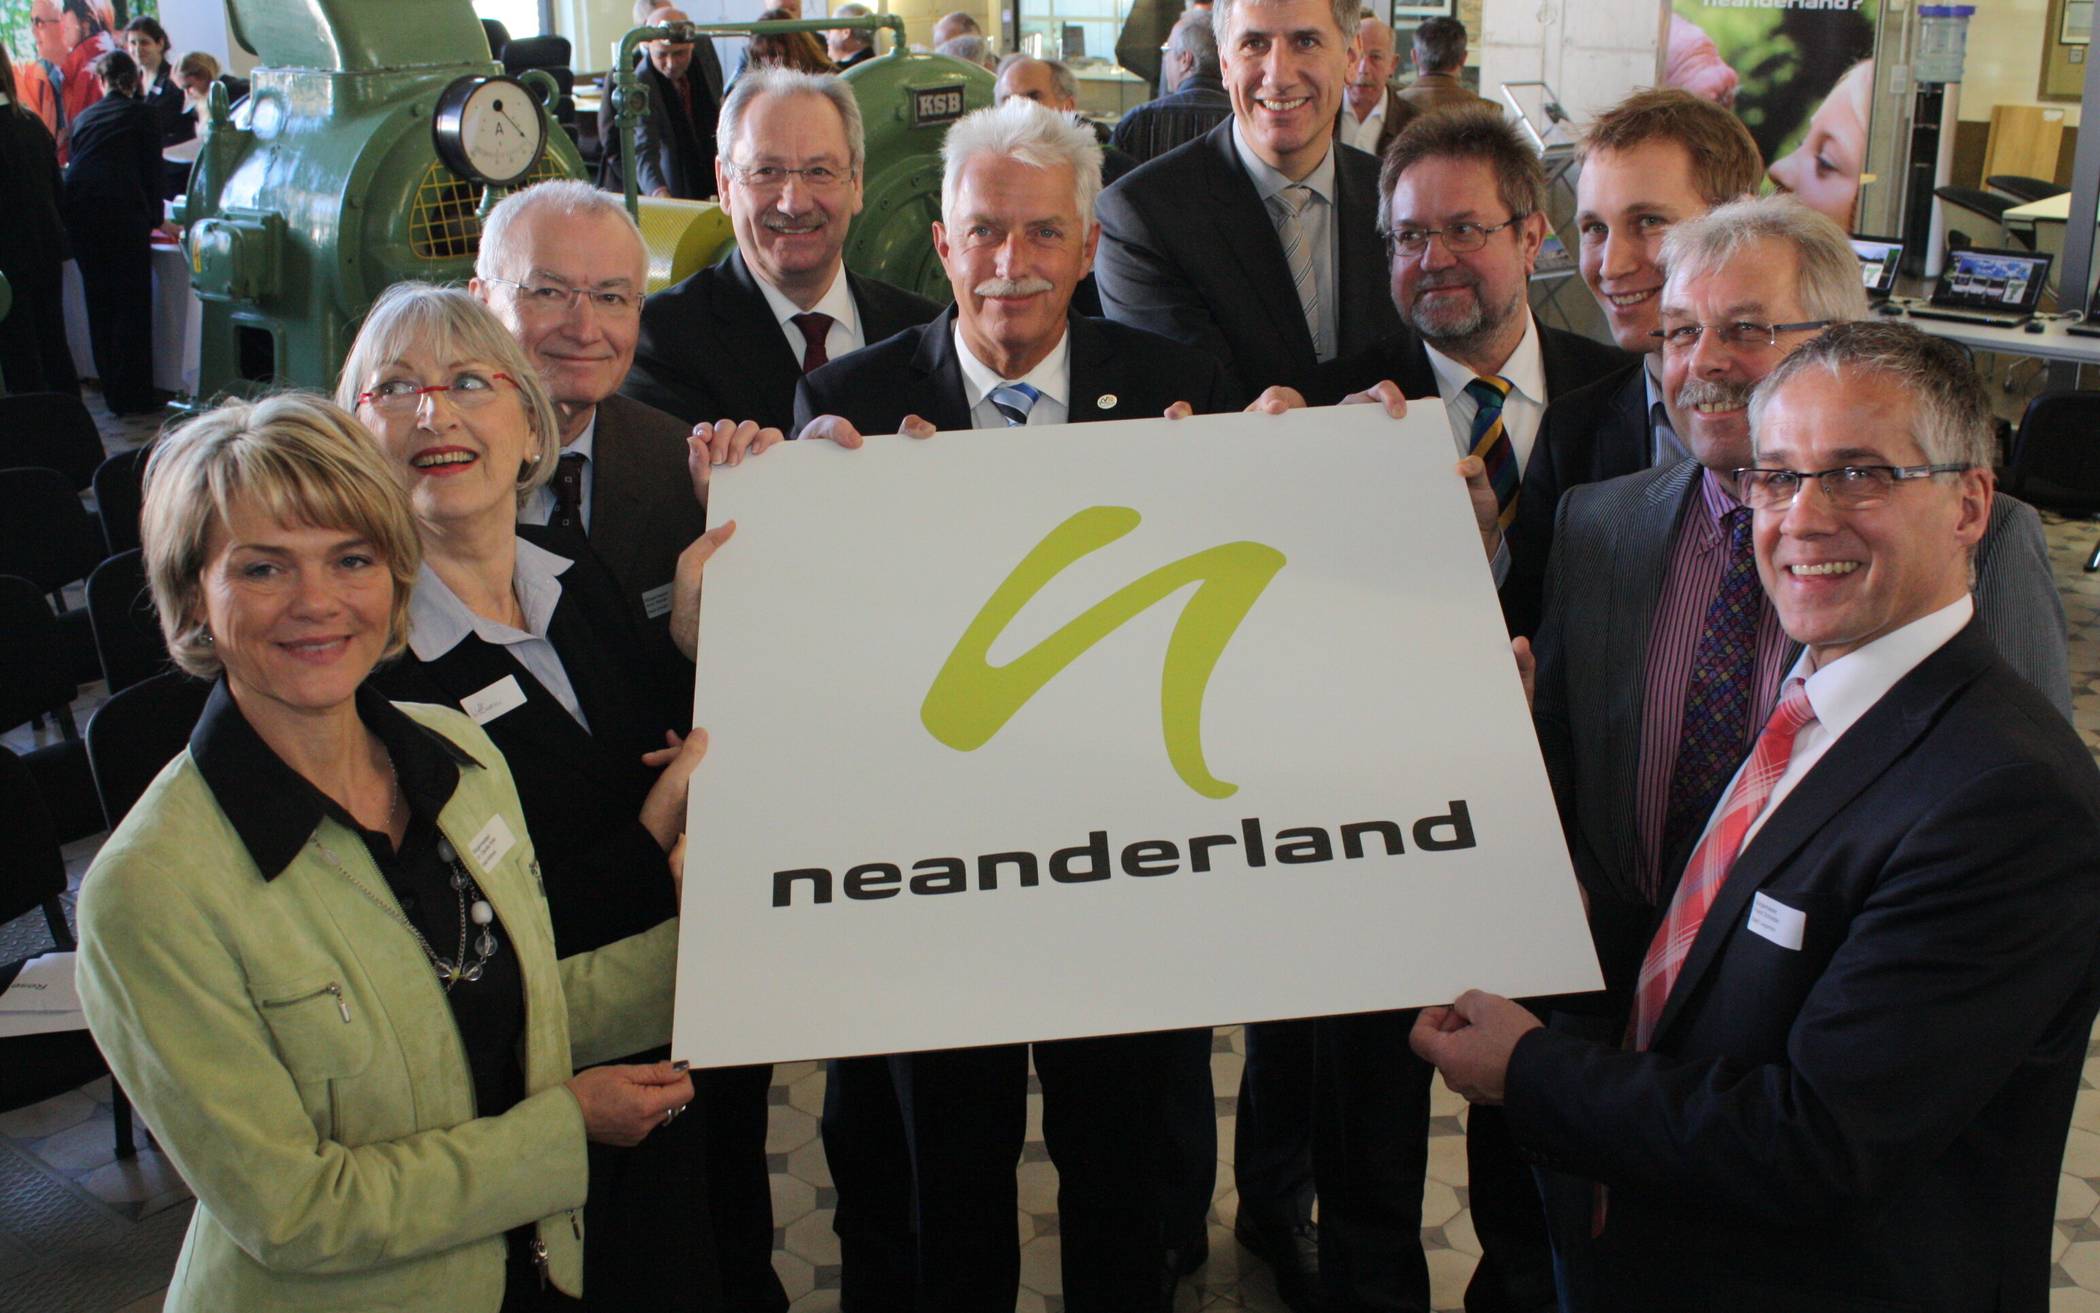  Vor zehn Jahren fiel der Startschuss für die erfolgreiche Vermarktung des Kreis Mettmann als Tourismusregion neanderland. 